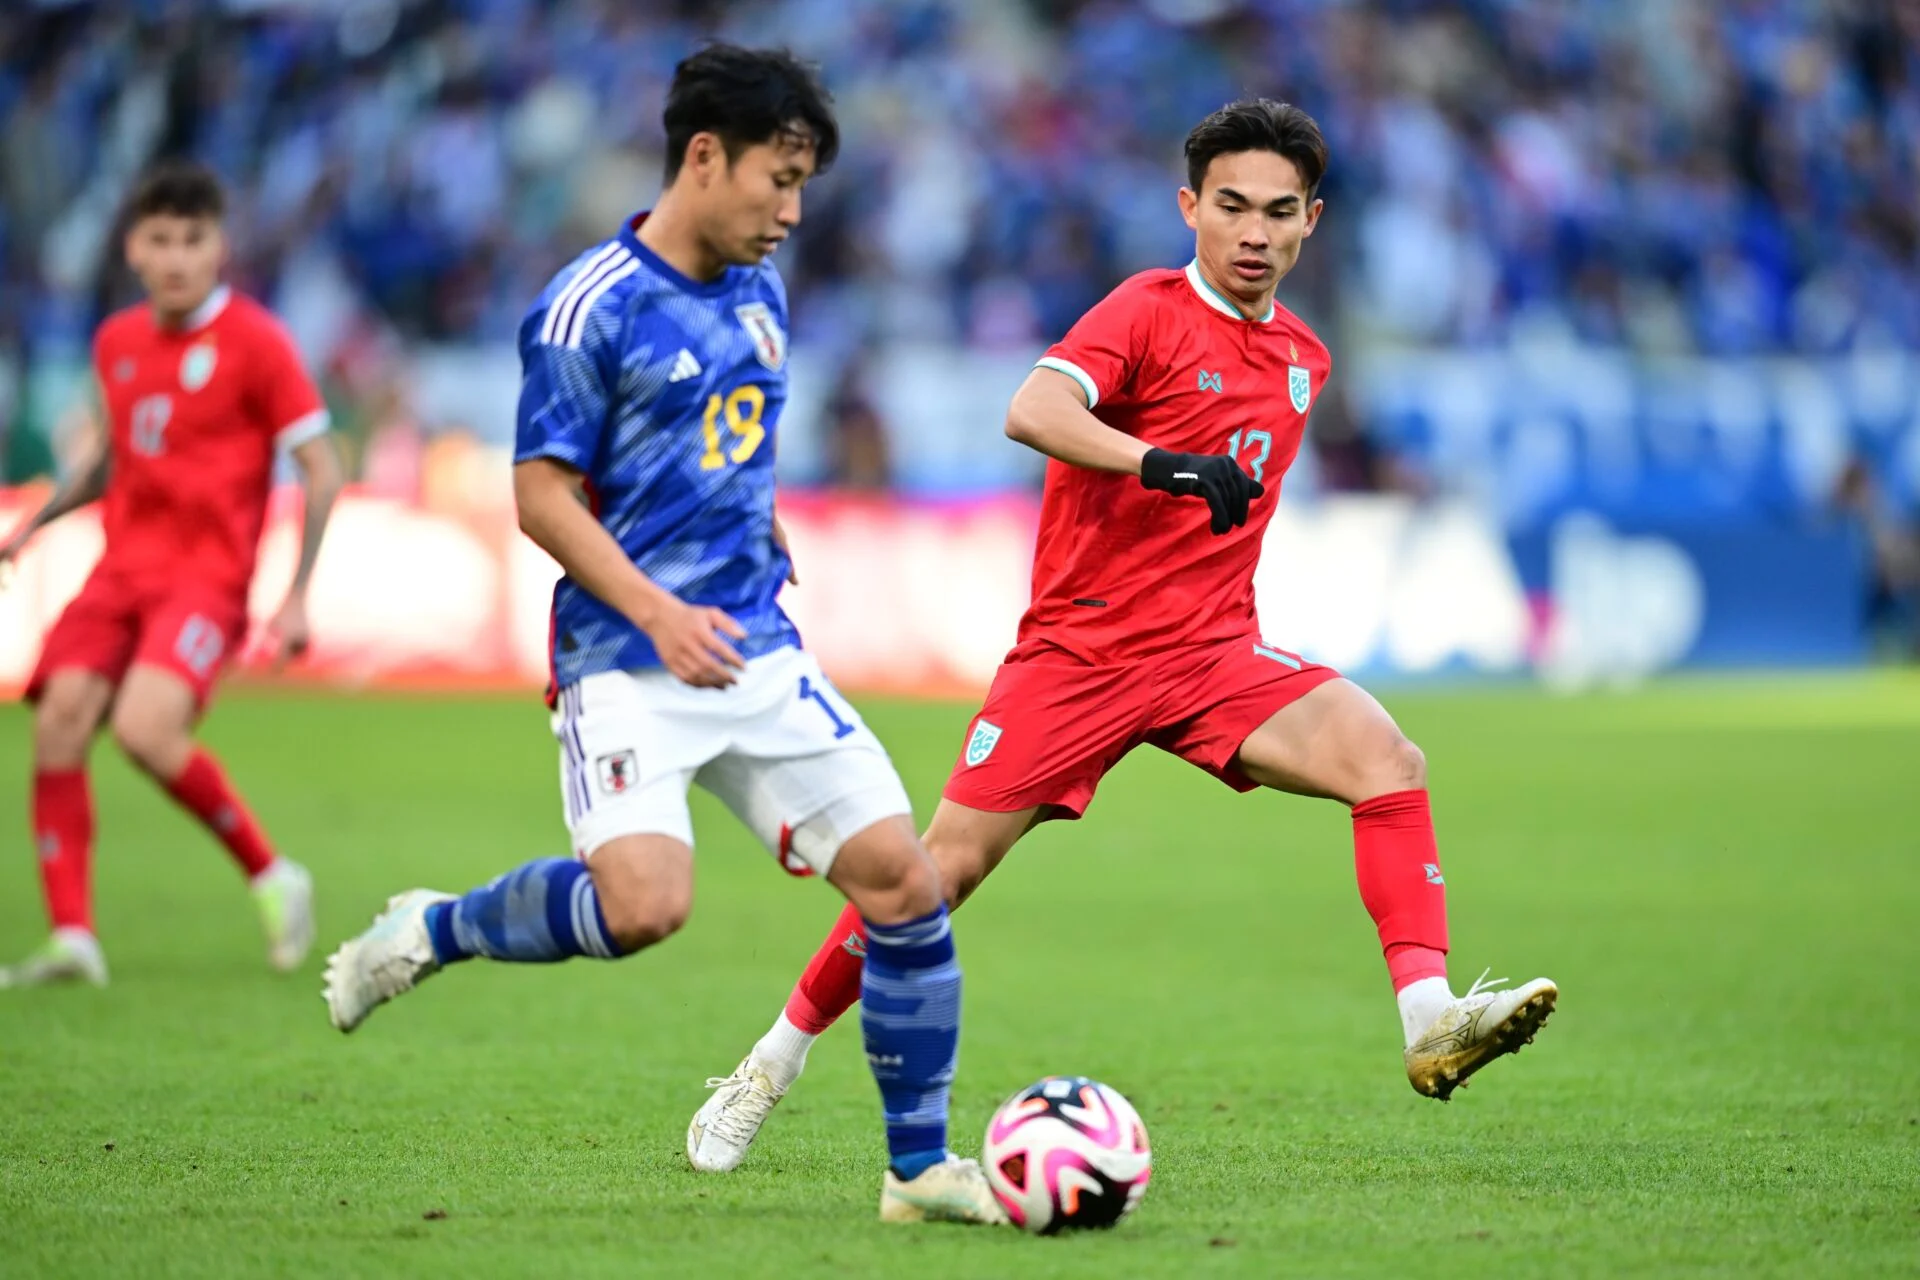 “ทีมชาติไทย” แพ้ญี่ปุ่น 0-5 อุ่นเครื่องก่อนเอเชียนคัพ